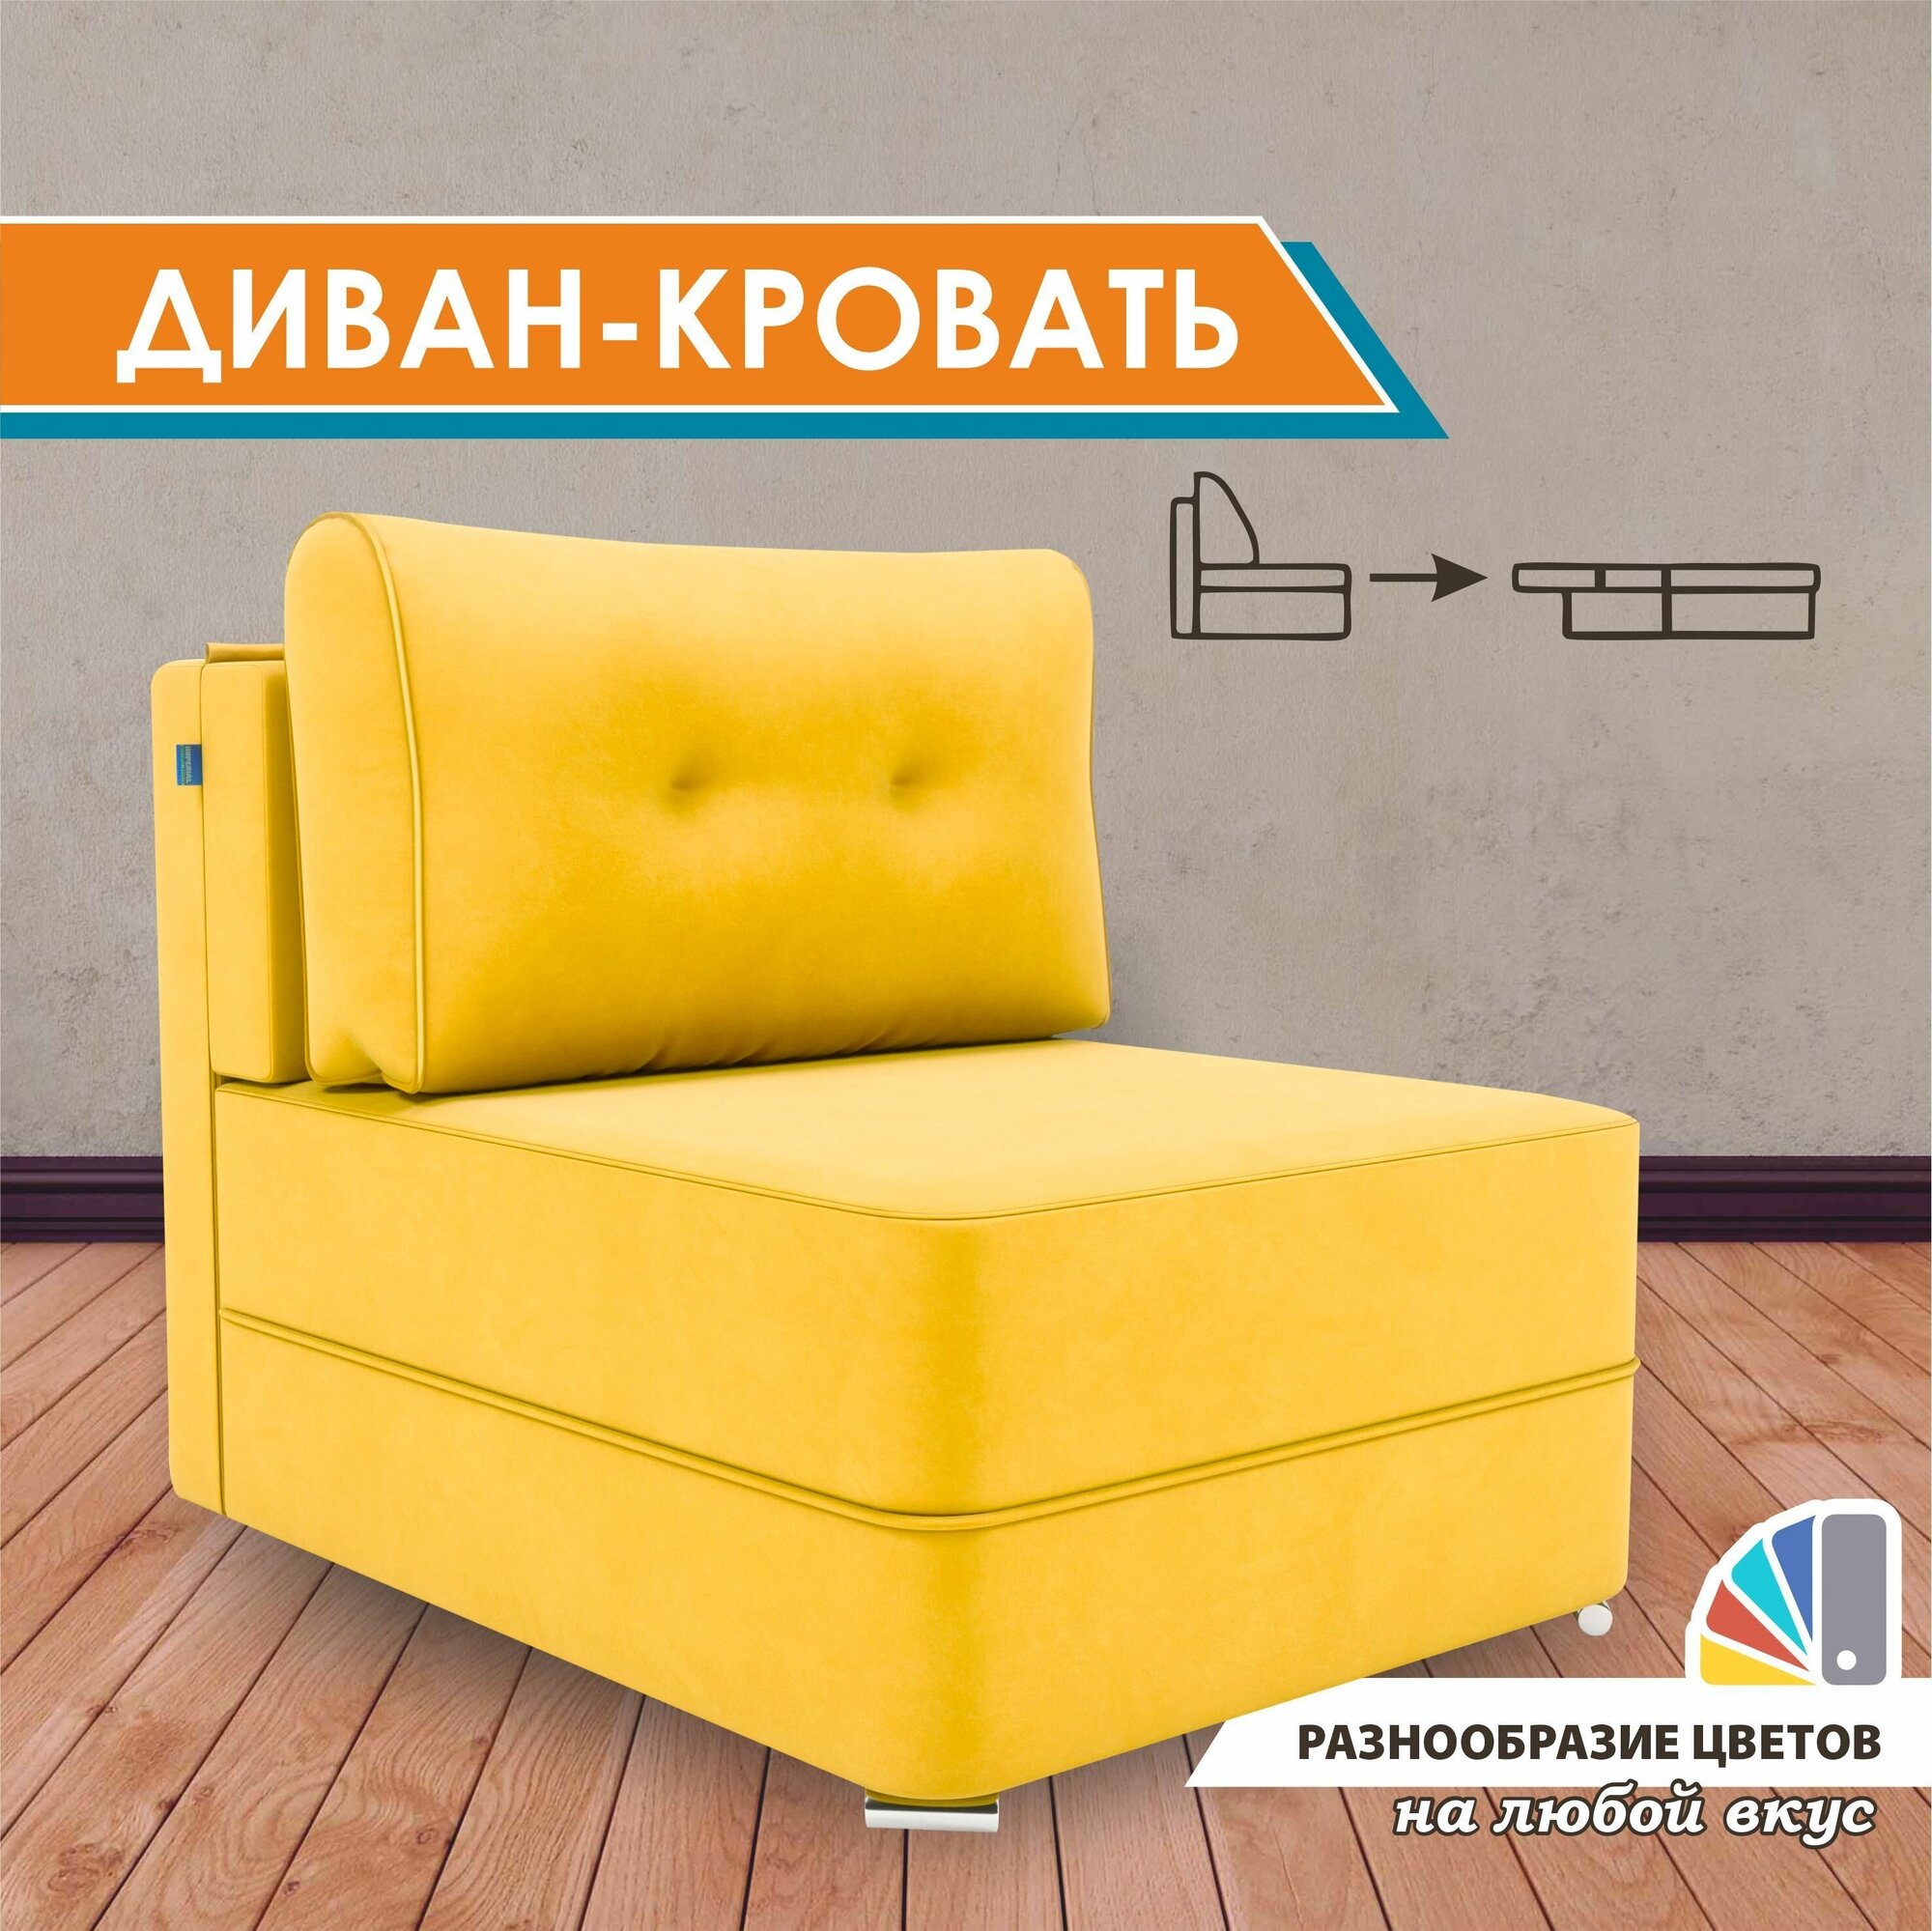 Диван-кровать GOSTIN Kapriz 100х200, раскладной детский диван, выкатной диван трансформер для кухни, Velutto40